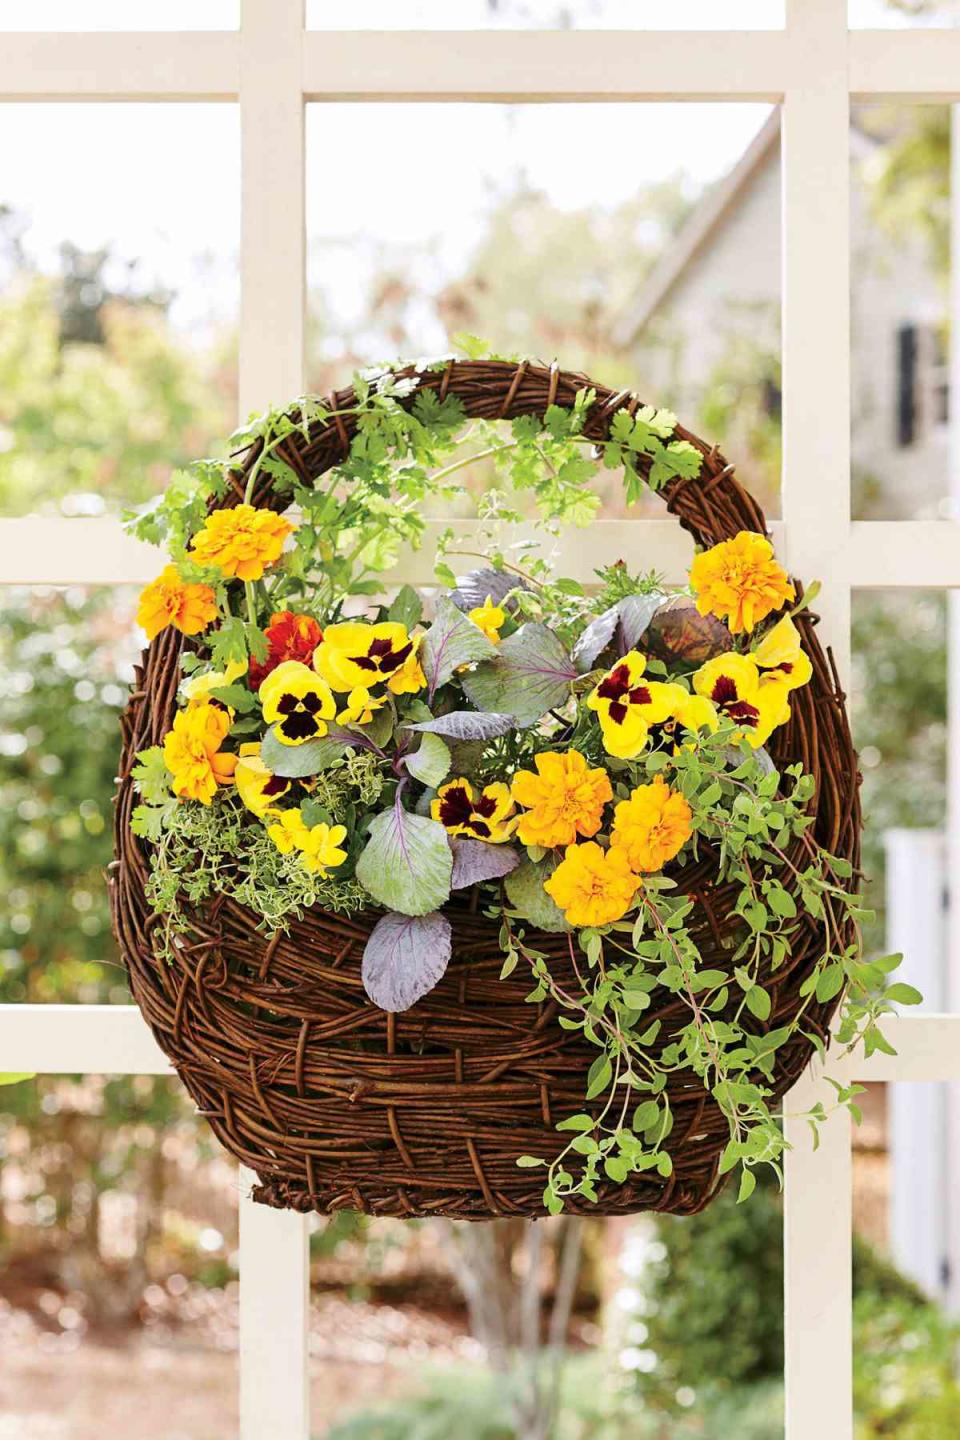 The Fragrant Flower Basket